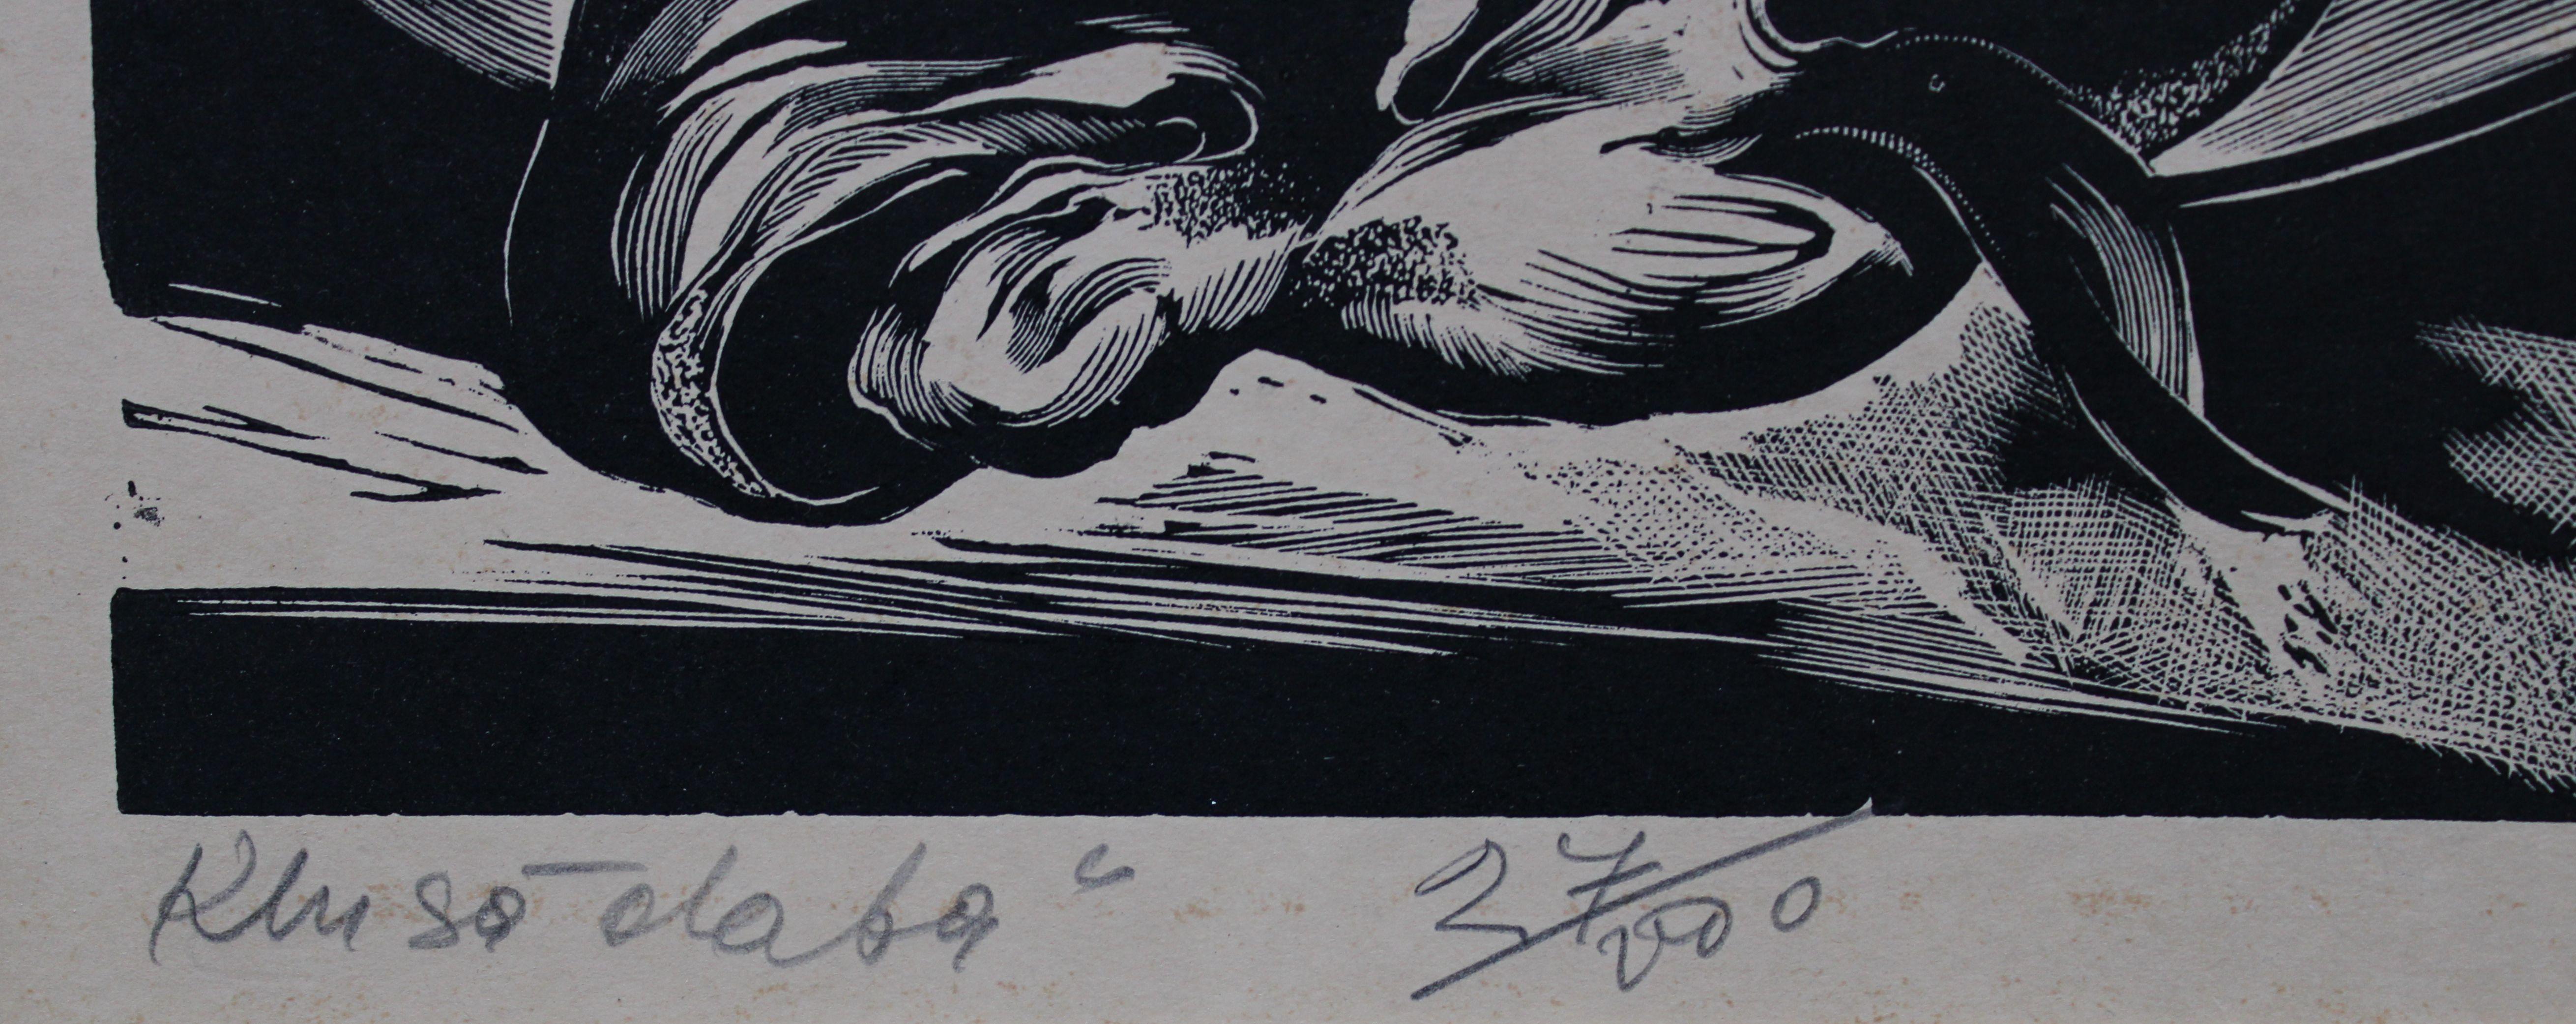 Stillleben 13/100. Papier, Linolschnitt, 5/100, 22x25 cm

1967

Olgerts Abelite (1909-1972)

Das Thema dieses Linolschnitts ist ein Stillleben mit einem Fisch auf einem Teller. Das Stillleben ist eine Kunstgattung, die sich in der Regel auf